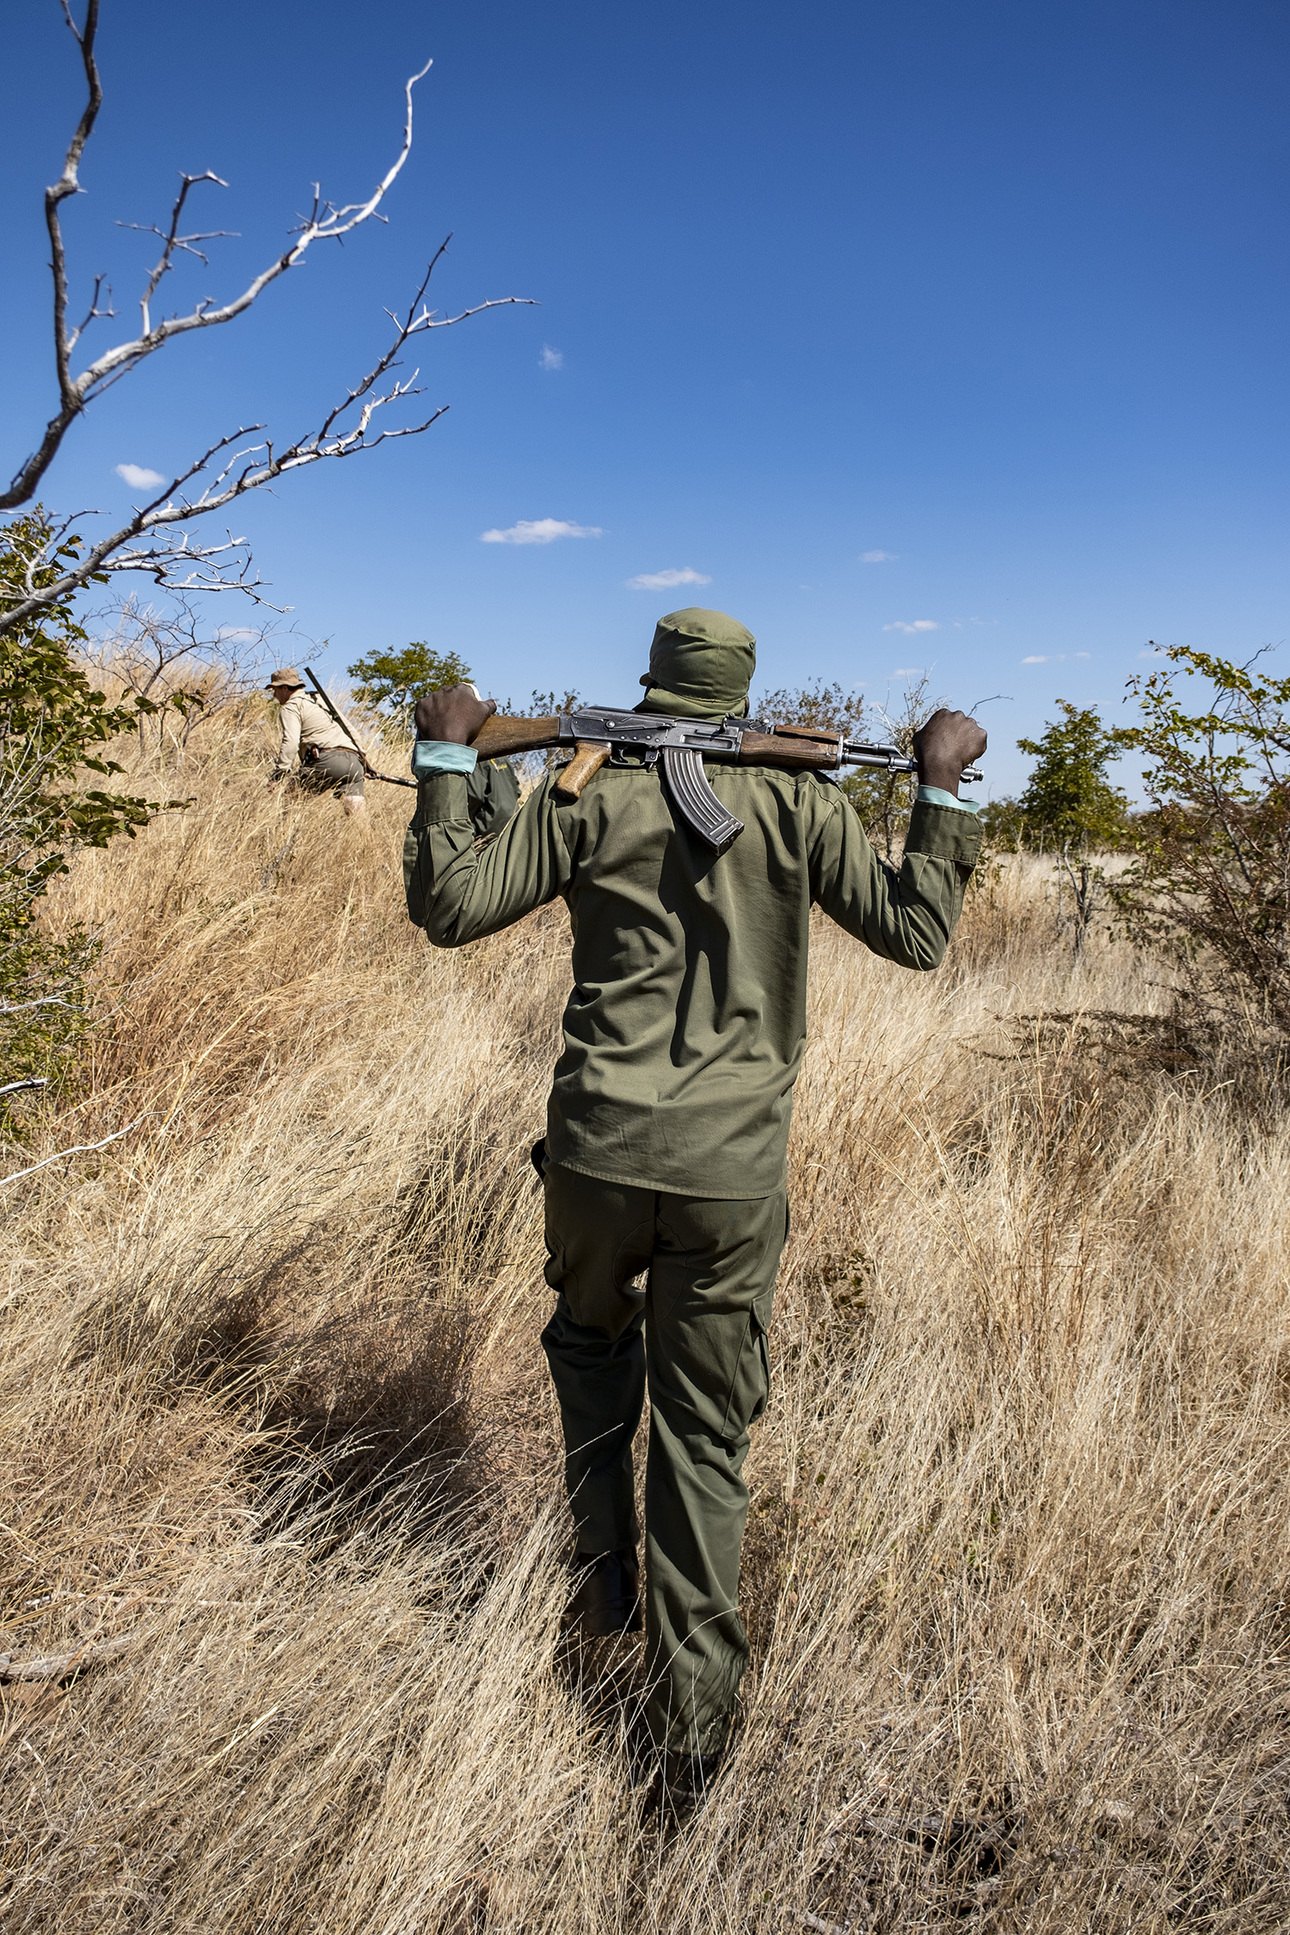 Изображение Готовый ко всему, с АК-47, охотничий разведчик охотится на буйволов. Фото: outdoorlife.com 